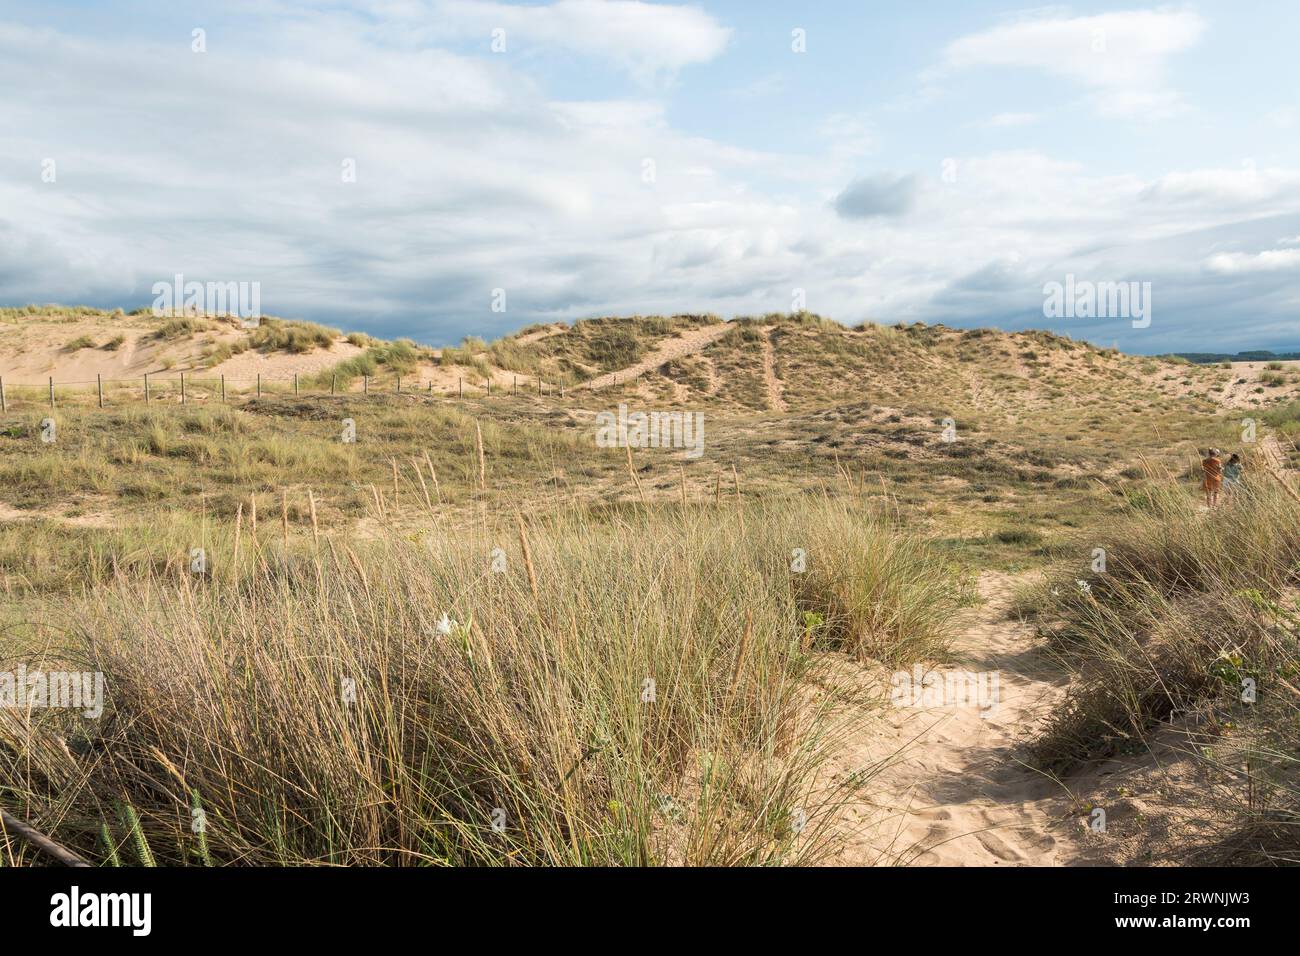 Liencres beach, Cantabria, Spain Stock Photo